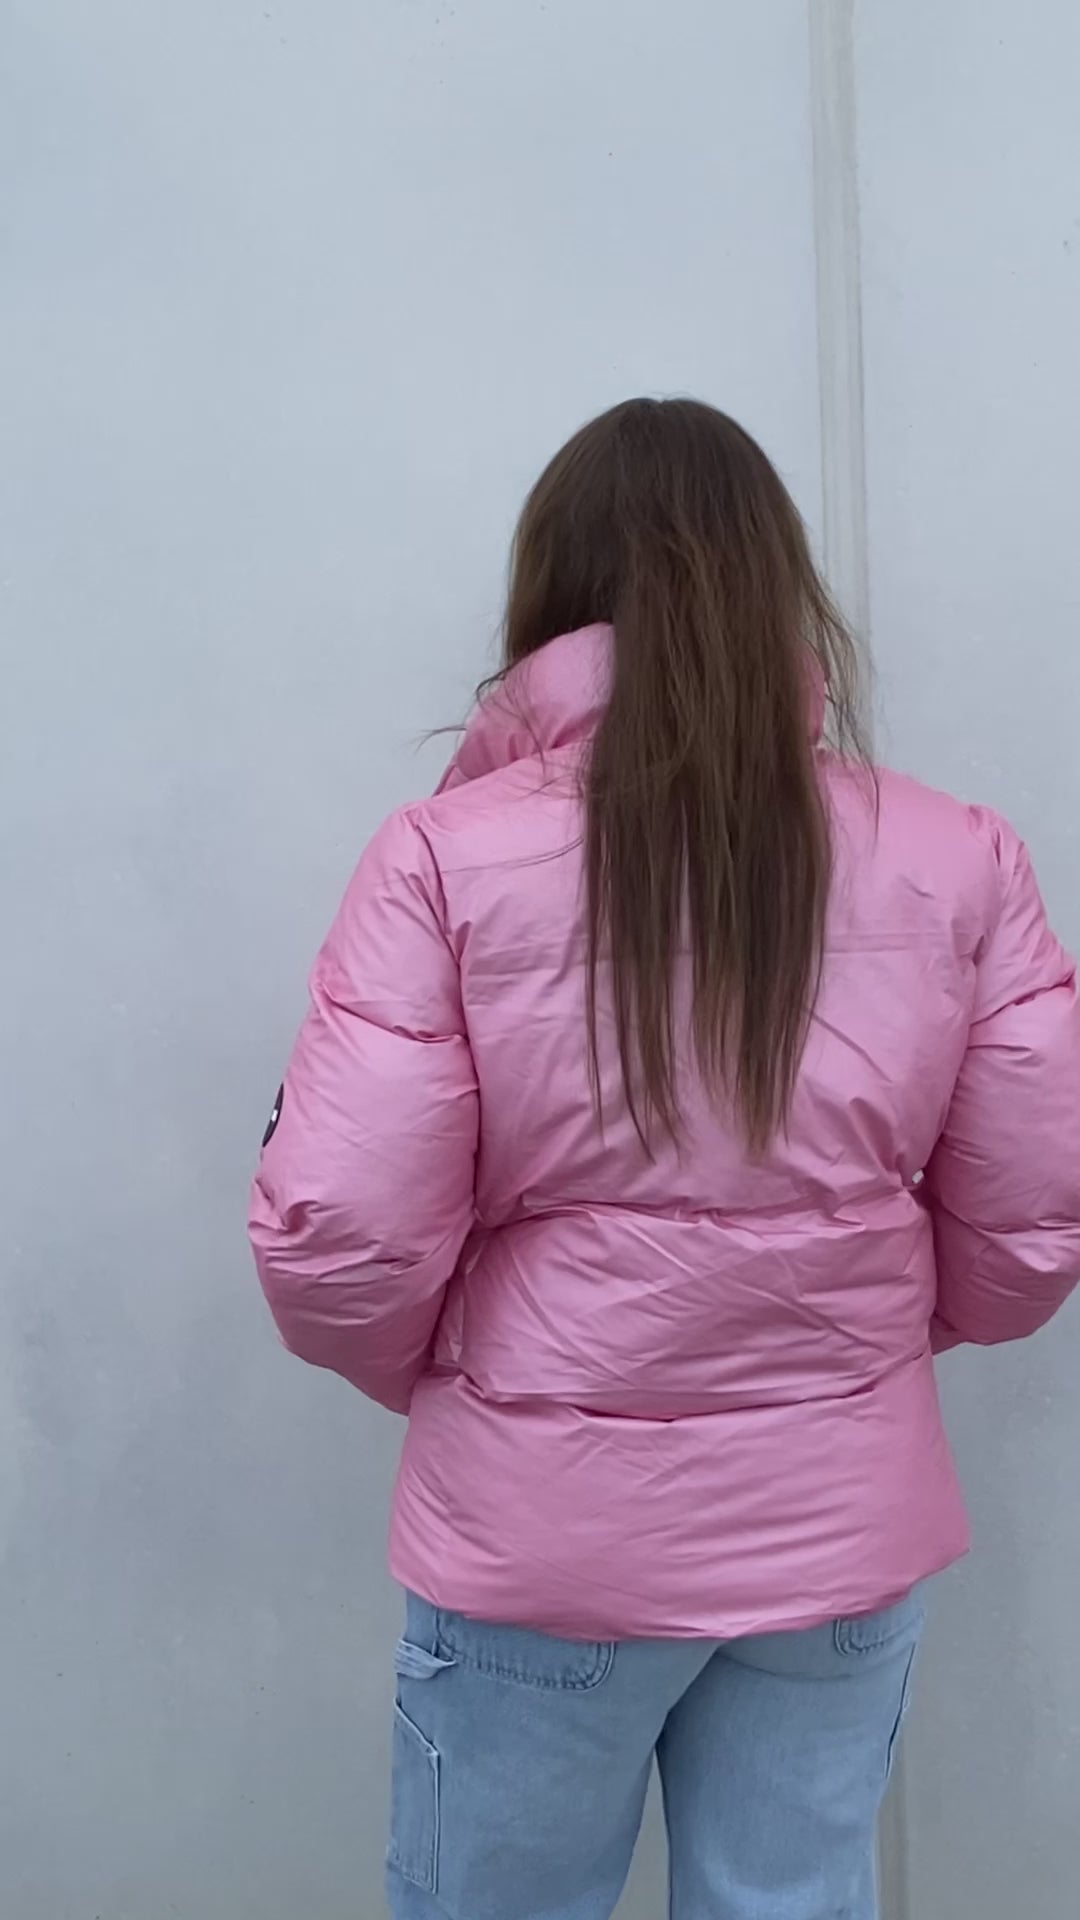 Boxy Puffer Jacket - Pink Sky - Rains